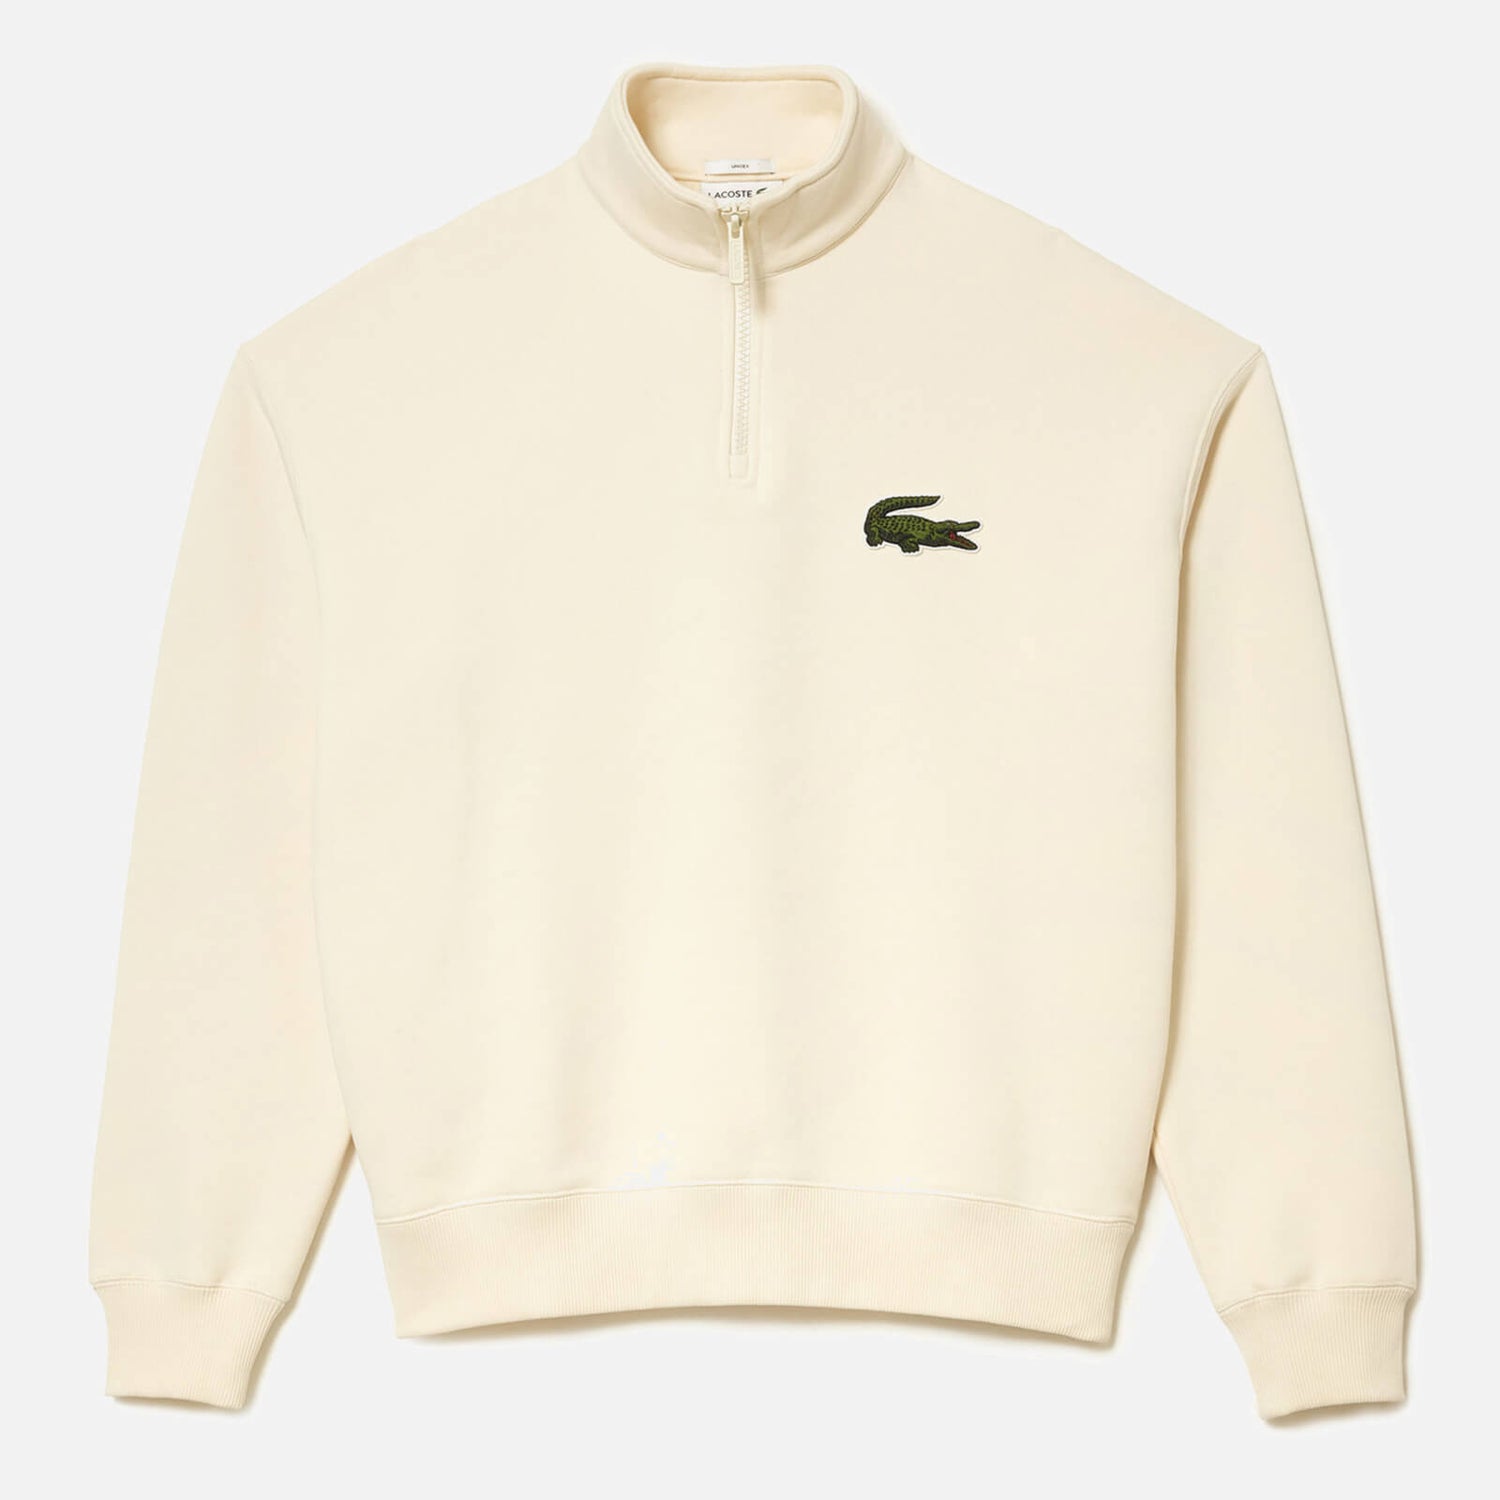 Lacoste DO Croc 80'S Cotton-Blend Sweatshirt